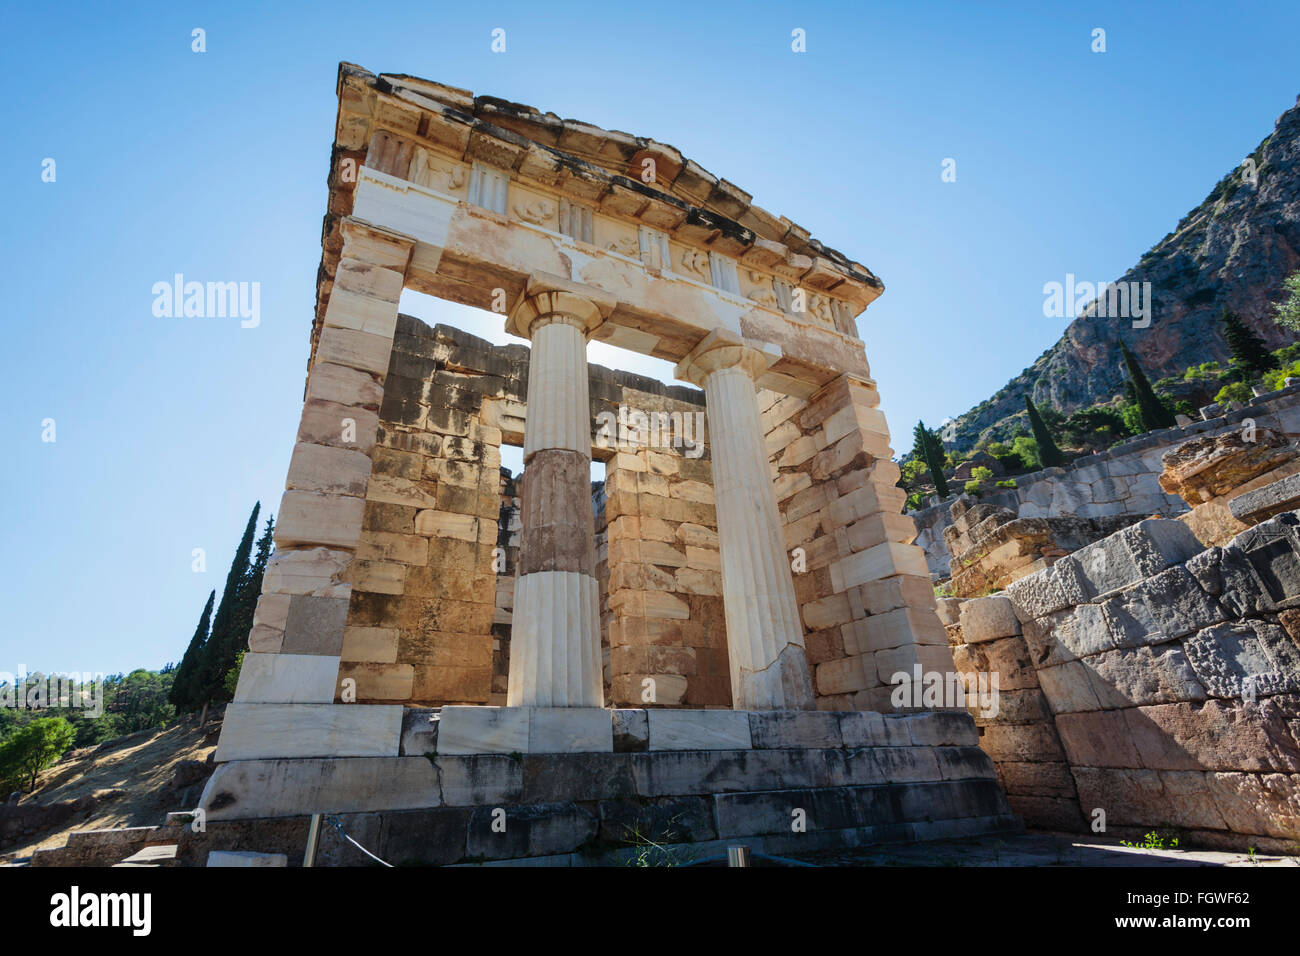 La antigua Delfos, Phocis, Grecia. Tesoro de los atenienses. Construido a comienzos del siglo IV A.C. Foto de stock